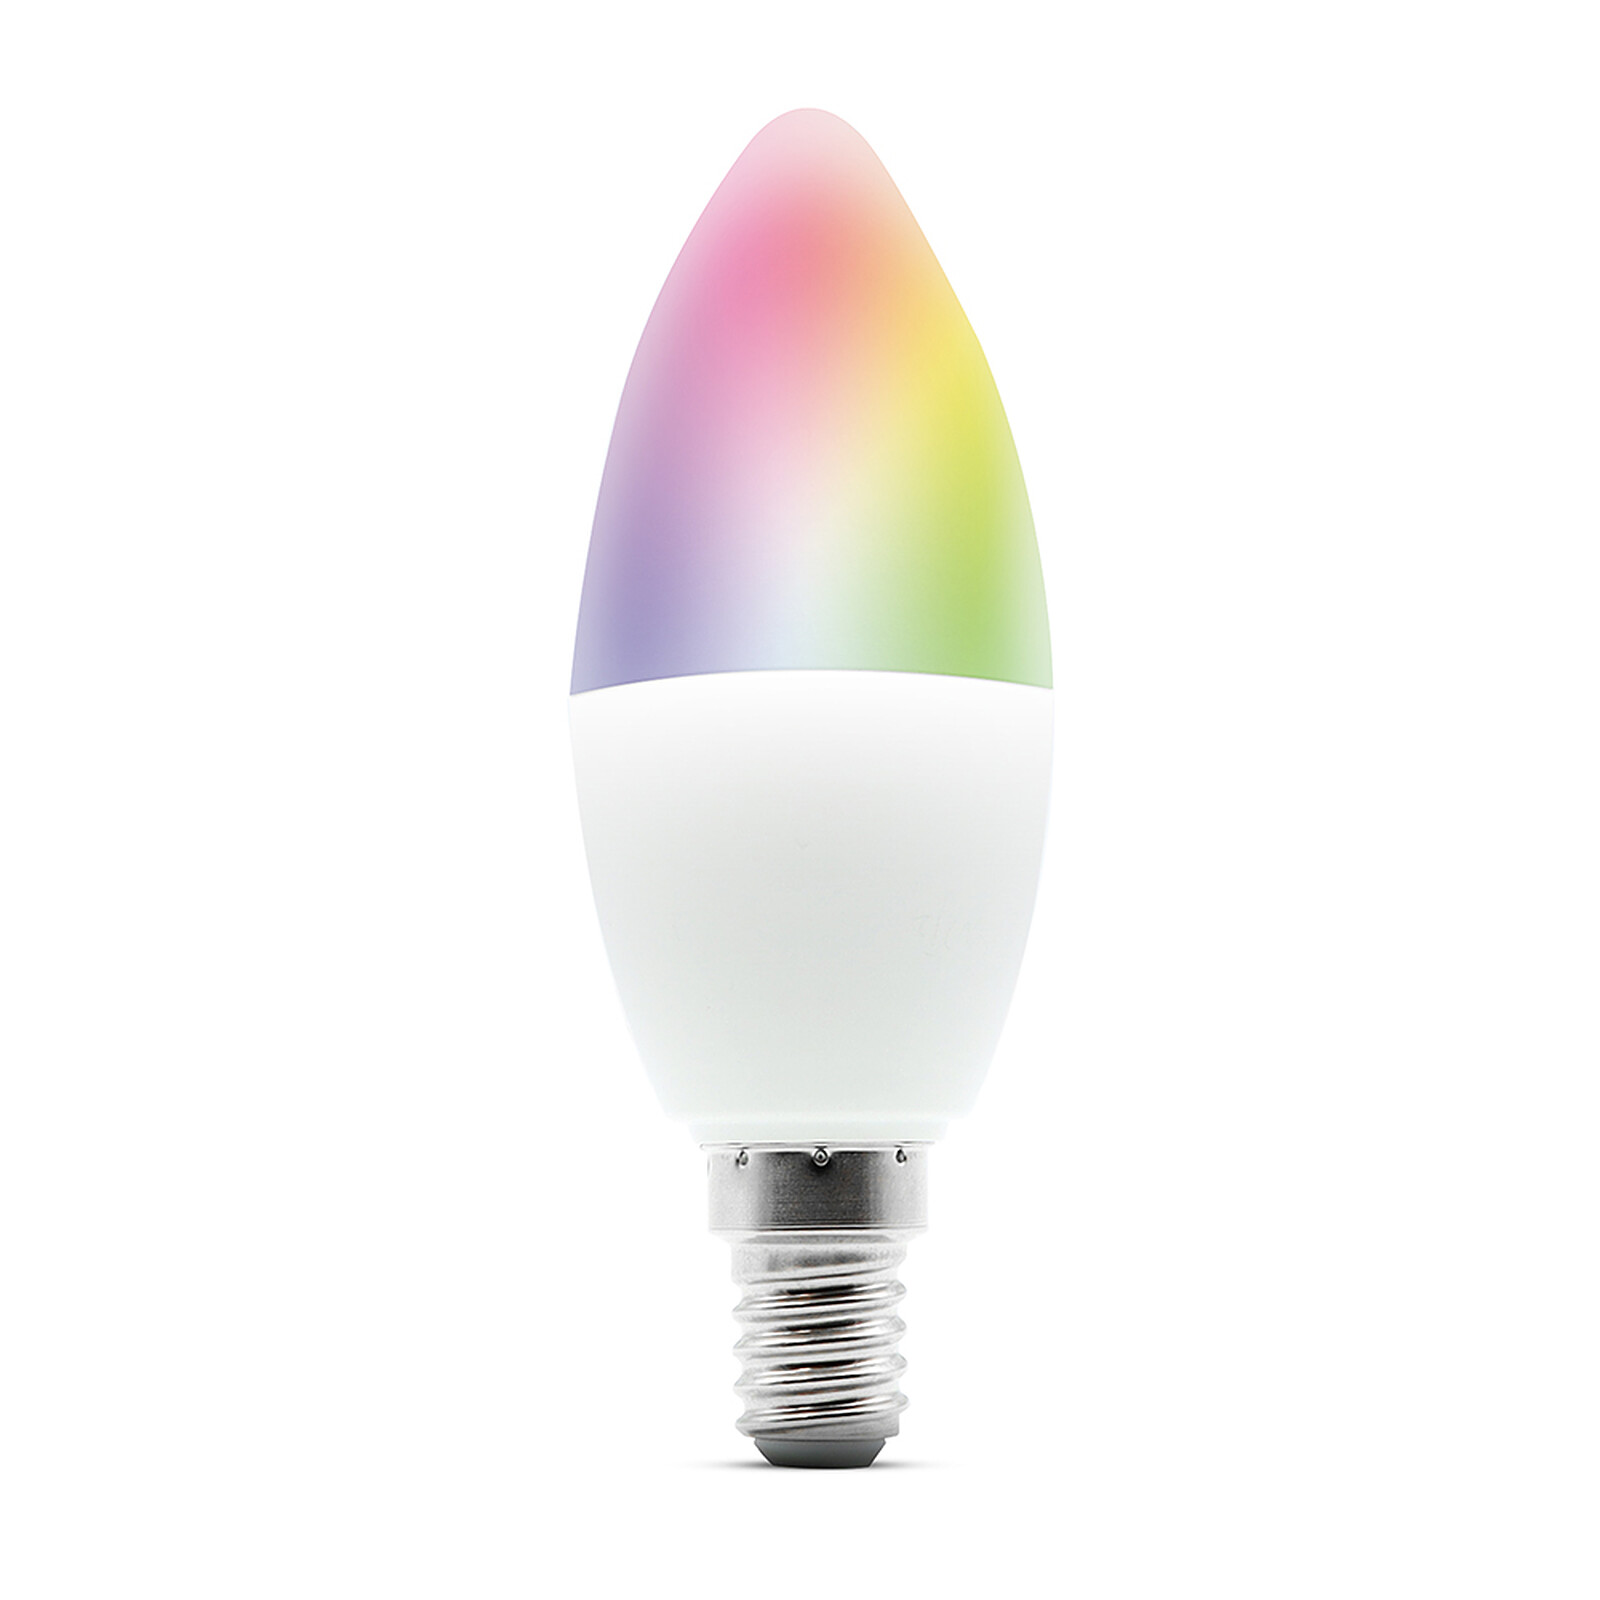 METRONIC - Ampoule intelligente Wi-Fi E14 LED RGB 5W - Ampoule